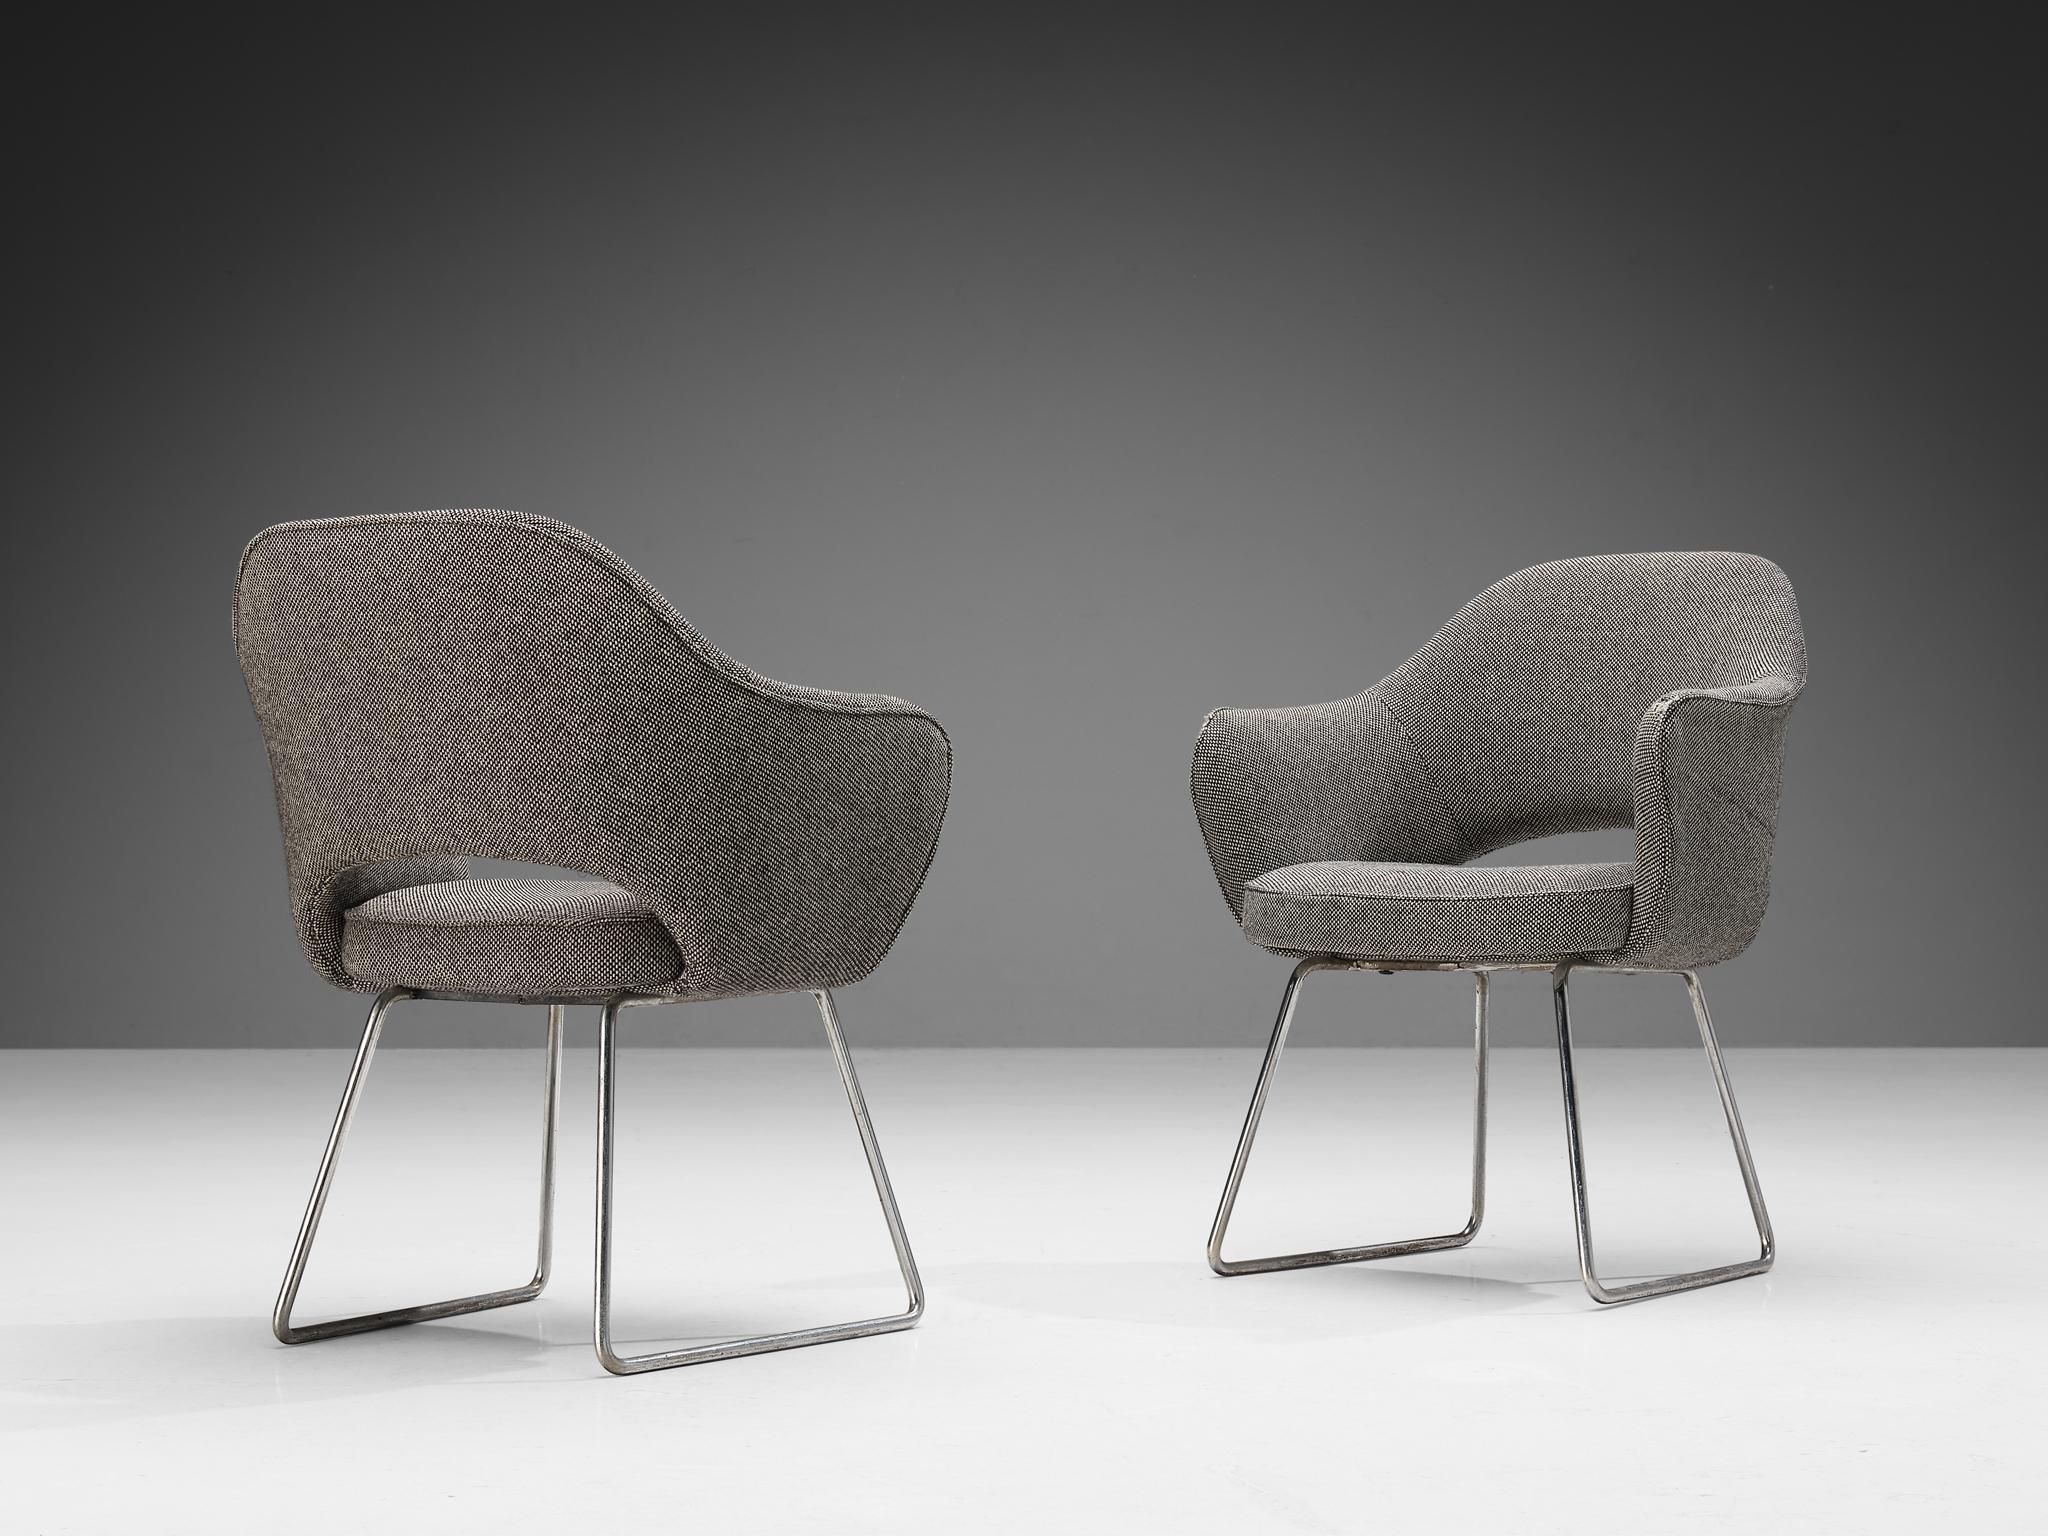 Eero Saarinen pour Knoll International, paire de fauteuils 'Conference', tissu, métal chromé, France, Paris, conçu en 1957

Ces fauteuils ont été commandés par le siège de l'UNESCO situé à Paris. Ce bâtiment emblématique a été achevé le 3(three)